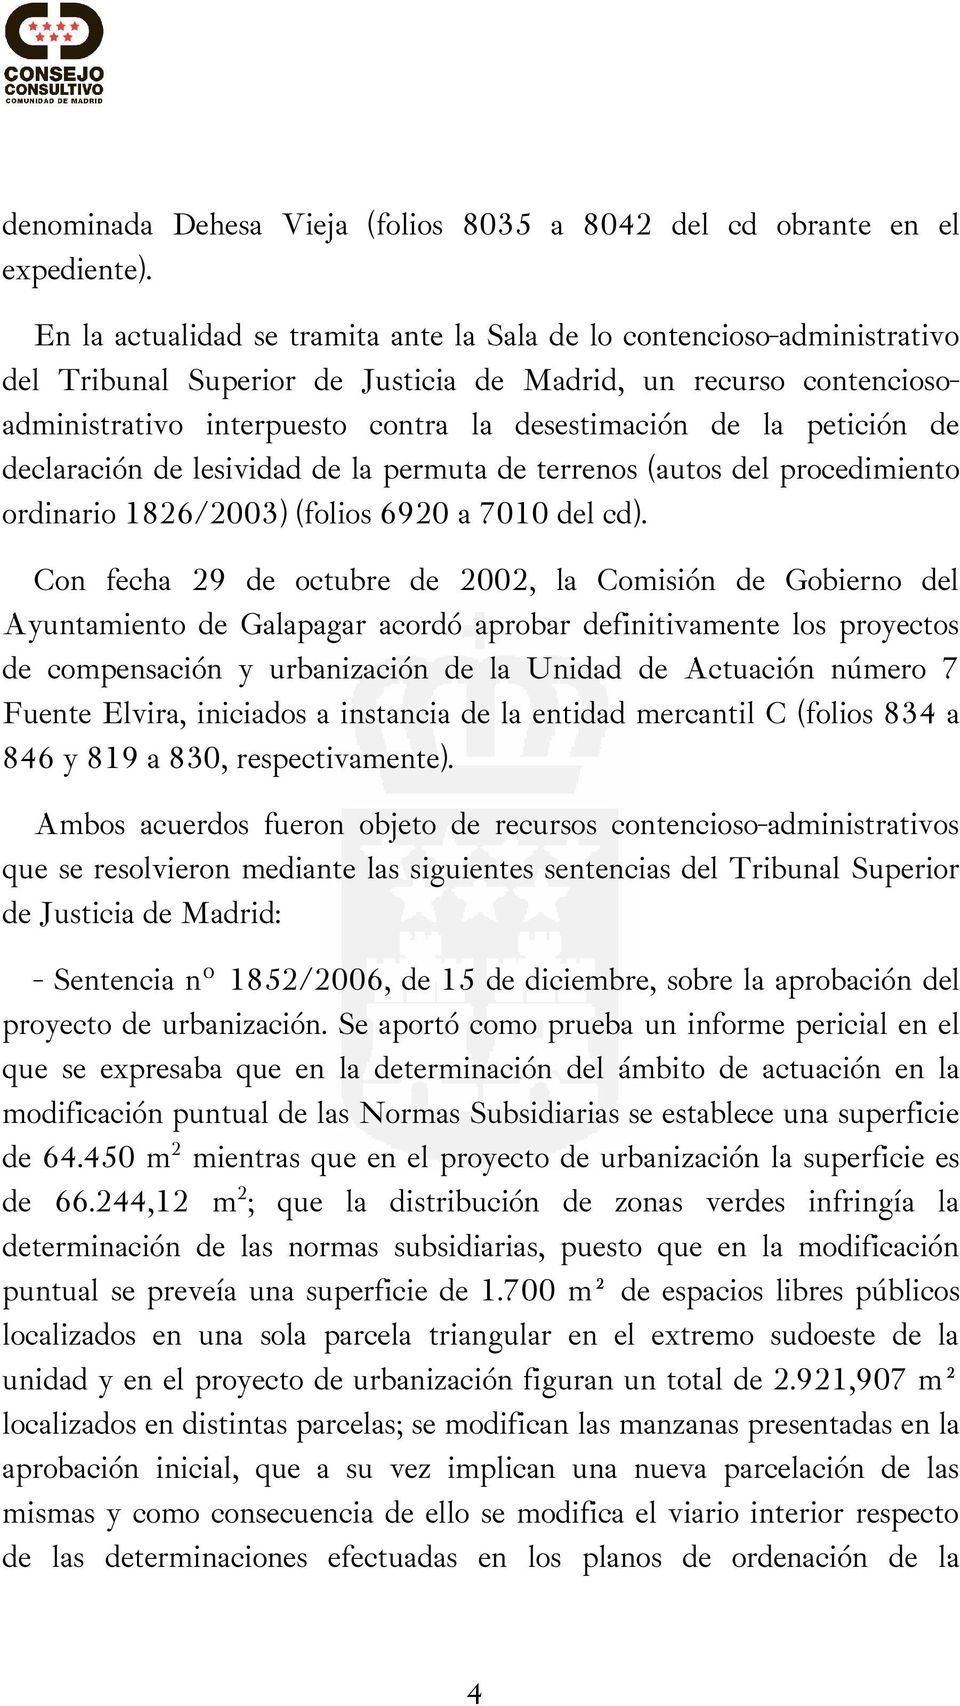 petición de declaración de lesividad de la permuta de terrenos (autos del procedimiento ordinario 1826/2003) (folios 6920 a 7010 del cd).